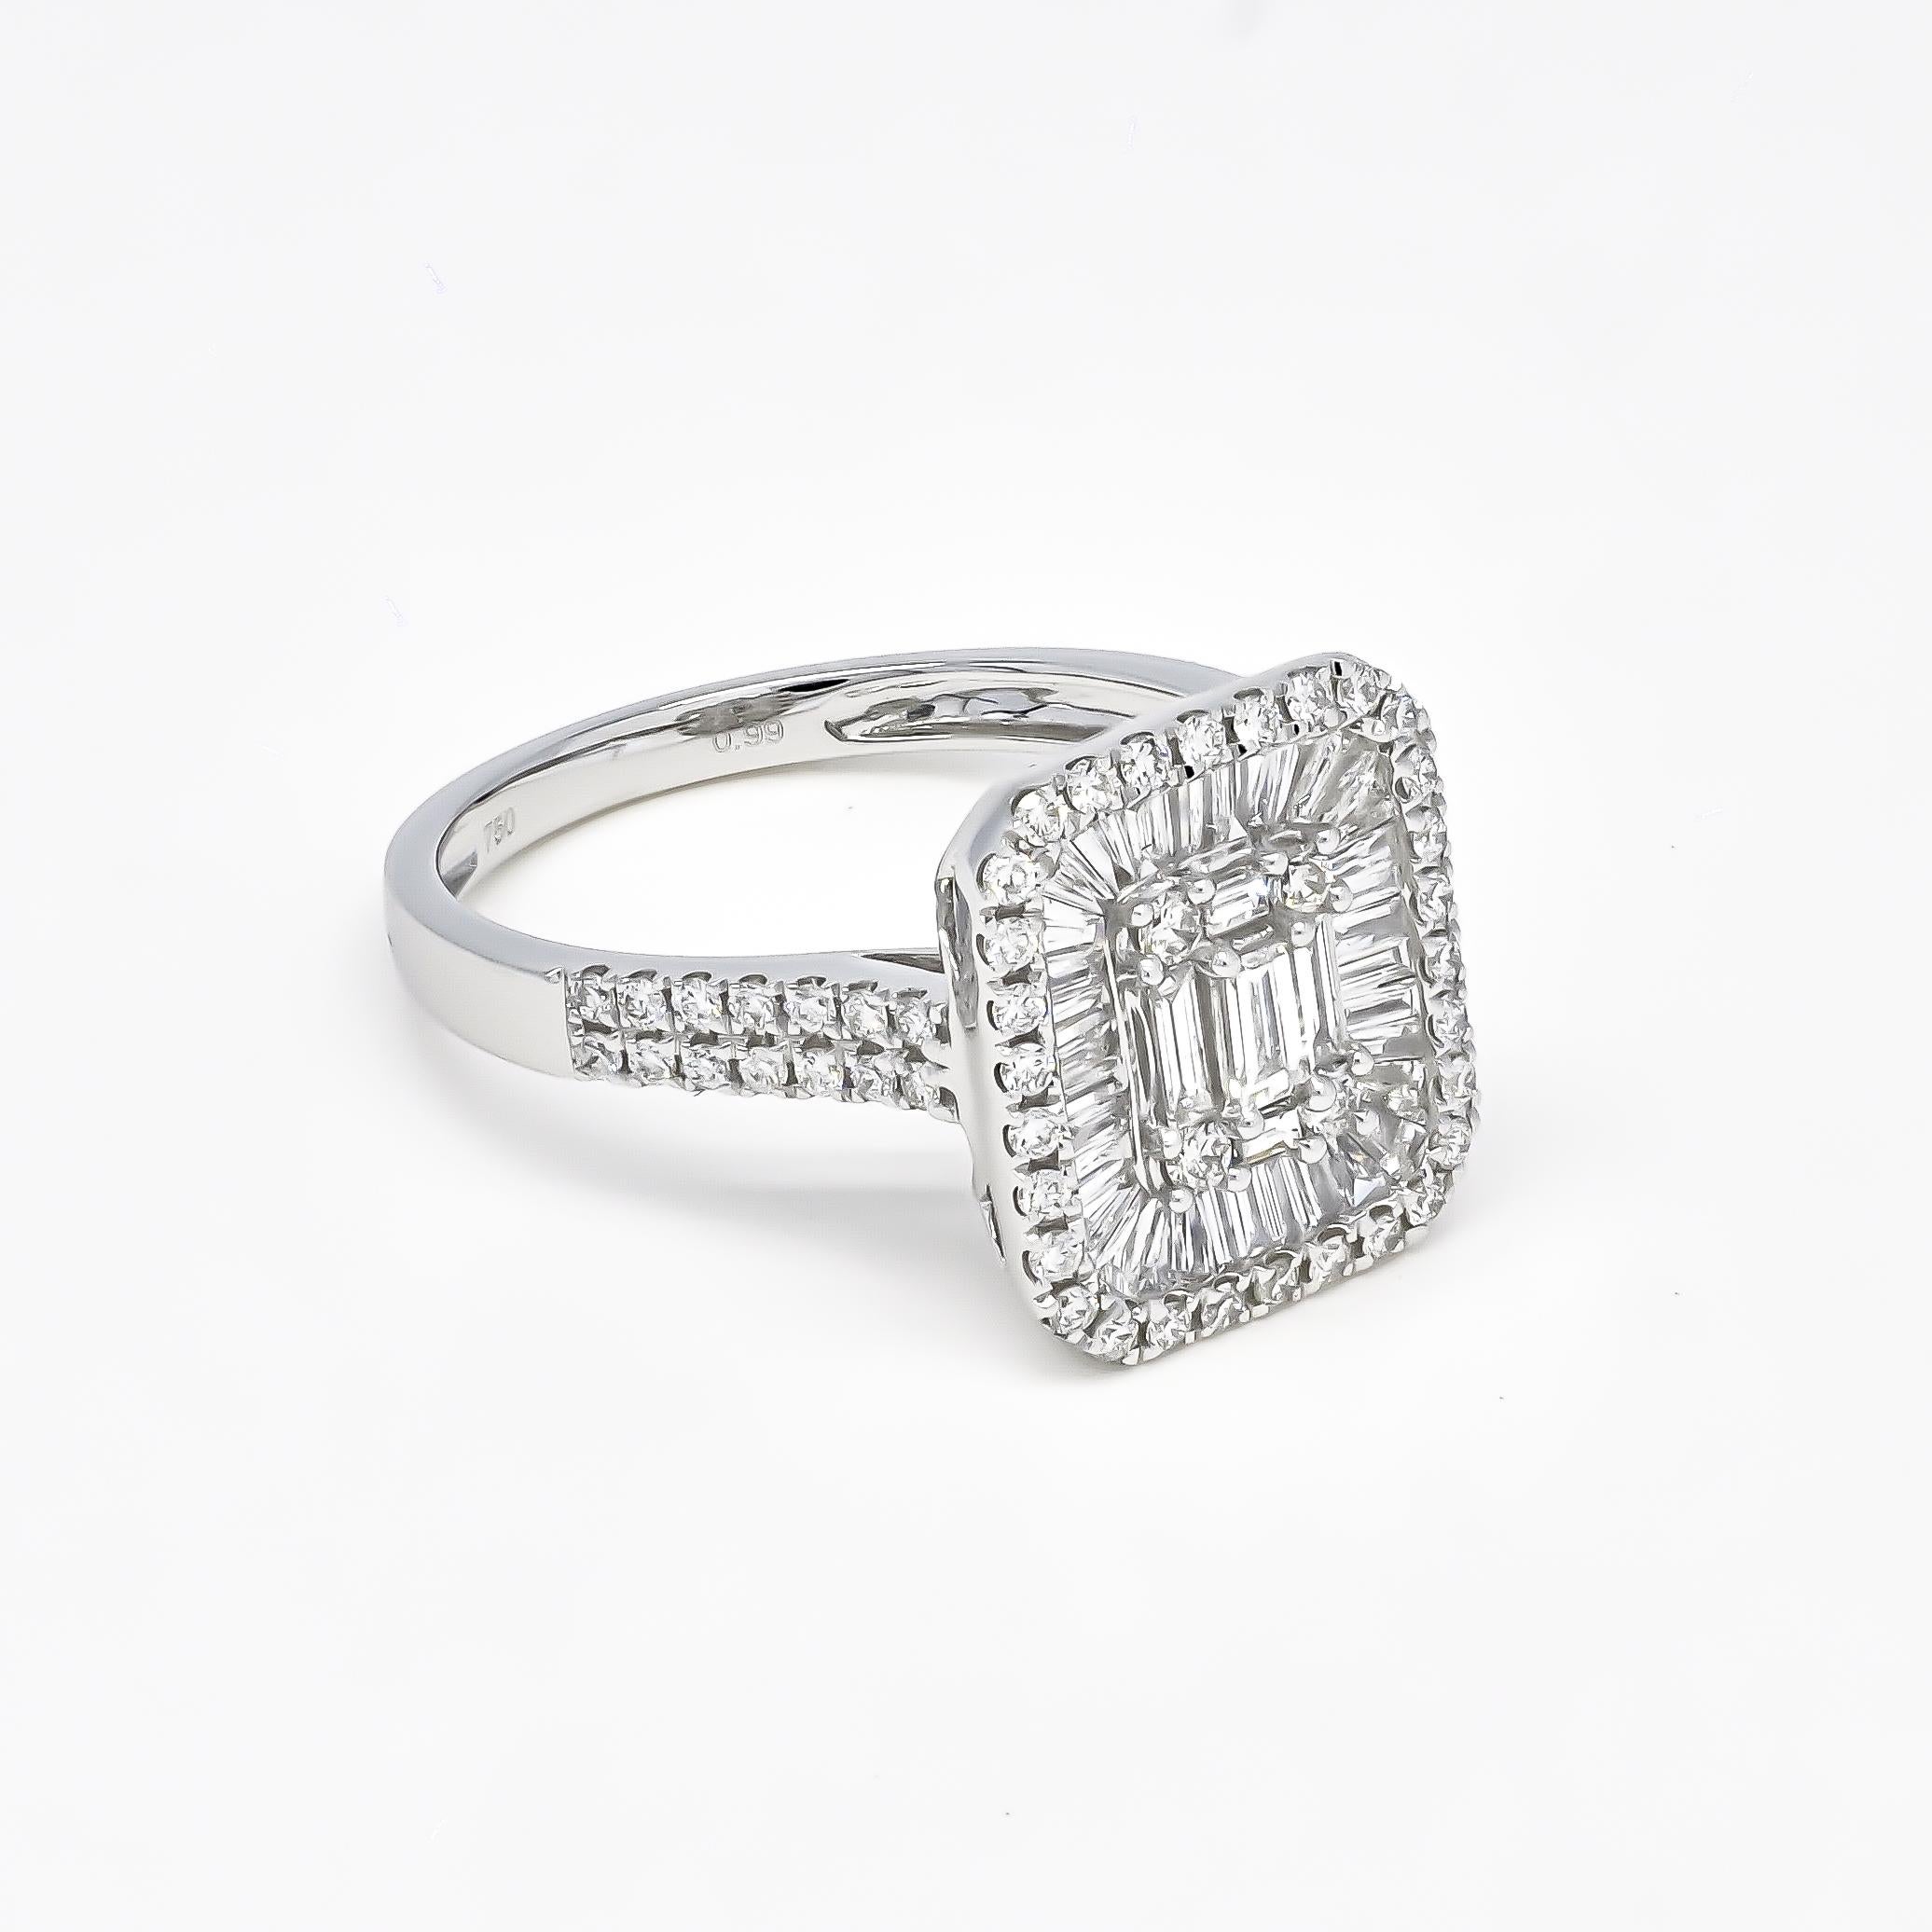 Dieser wunderschöne Verlobungsring in Form eines Halo-Clusters mit runden und Baguette-Diamanten und schönem, mit Diamanten besetztem Schaft ist noch einen Schritt weiter als nur wunderschön. 

Der einzigartige Glanz von Diamant-Baguetten kommt in